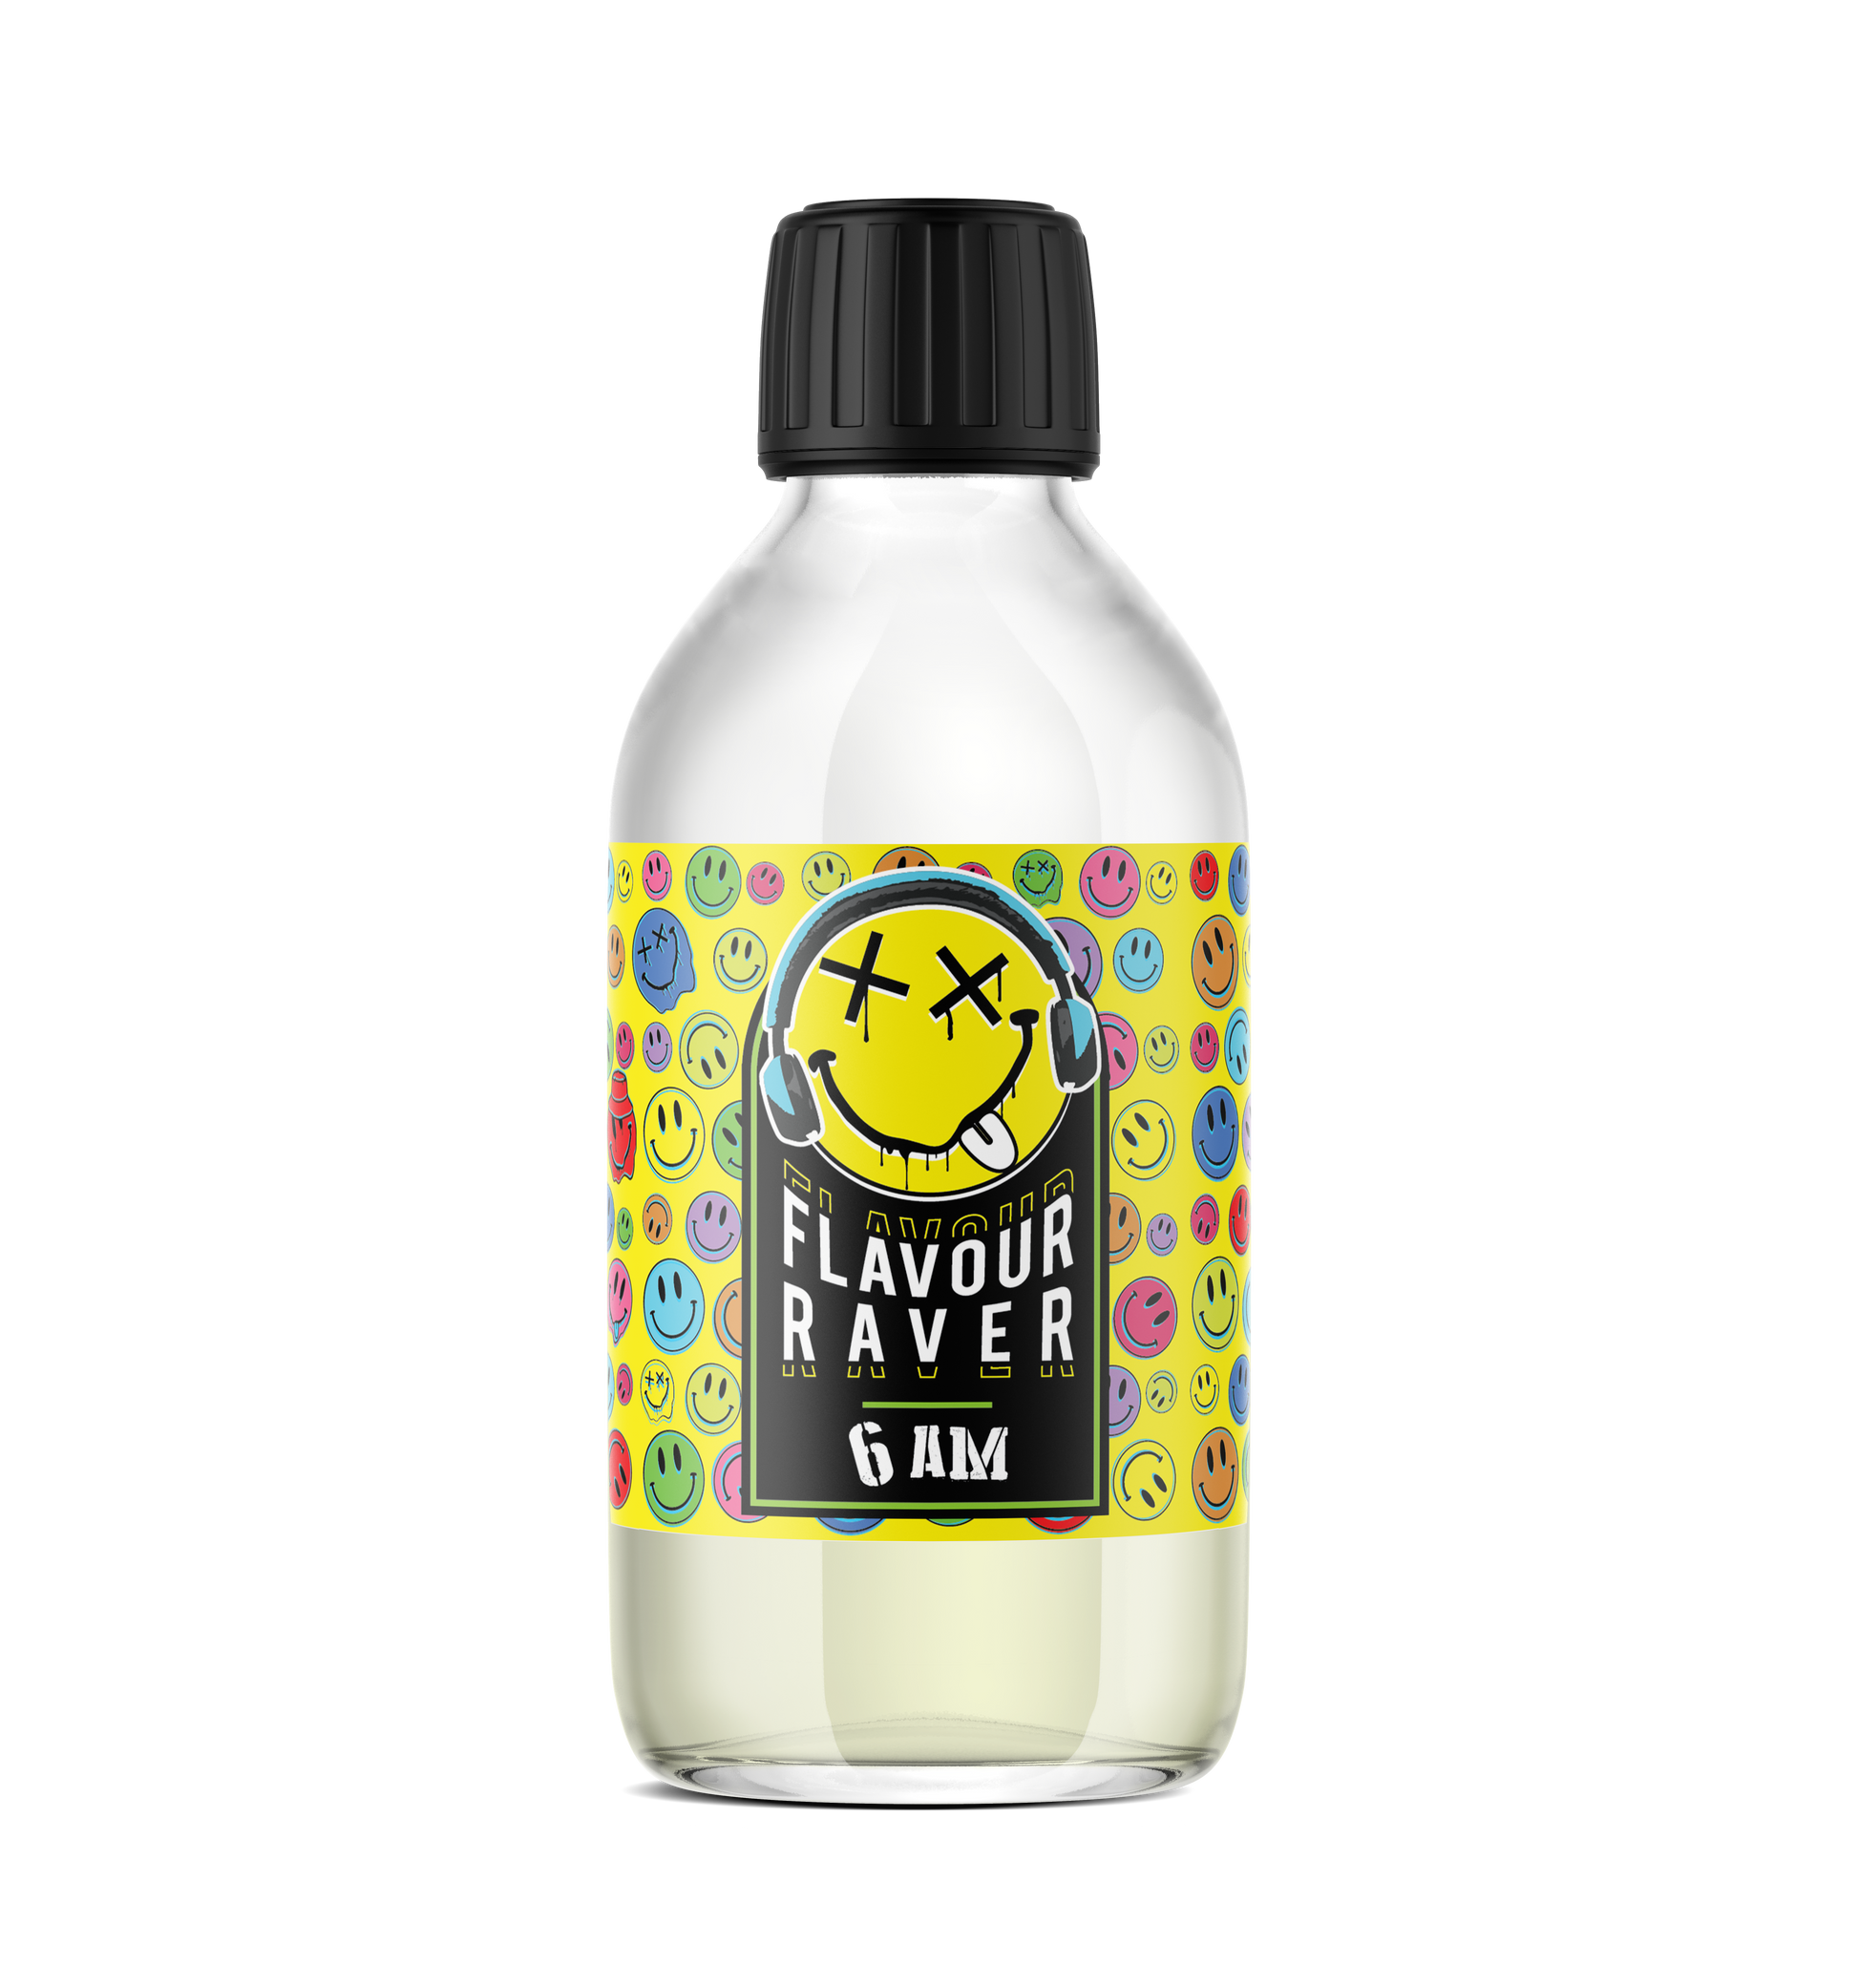 Flavour Raver 6AM 200ML Shortfill - The Ace Of Vapez